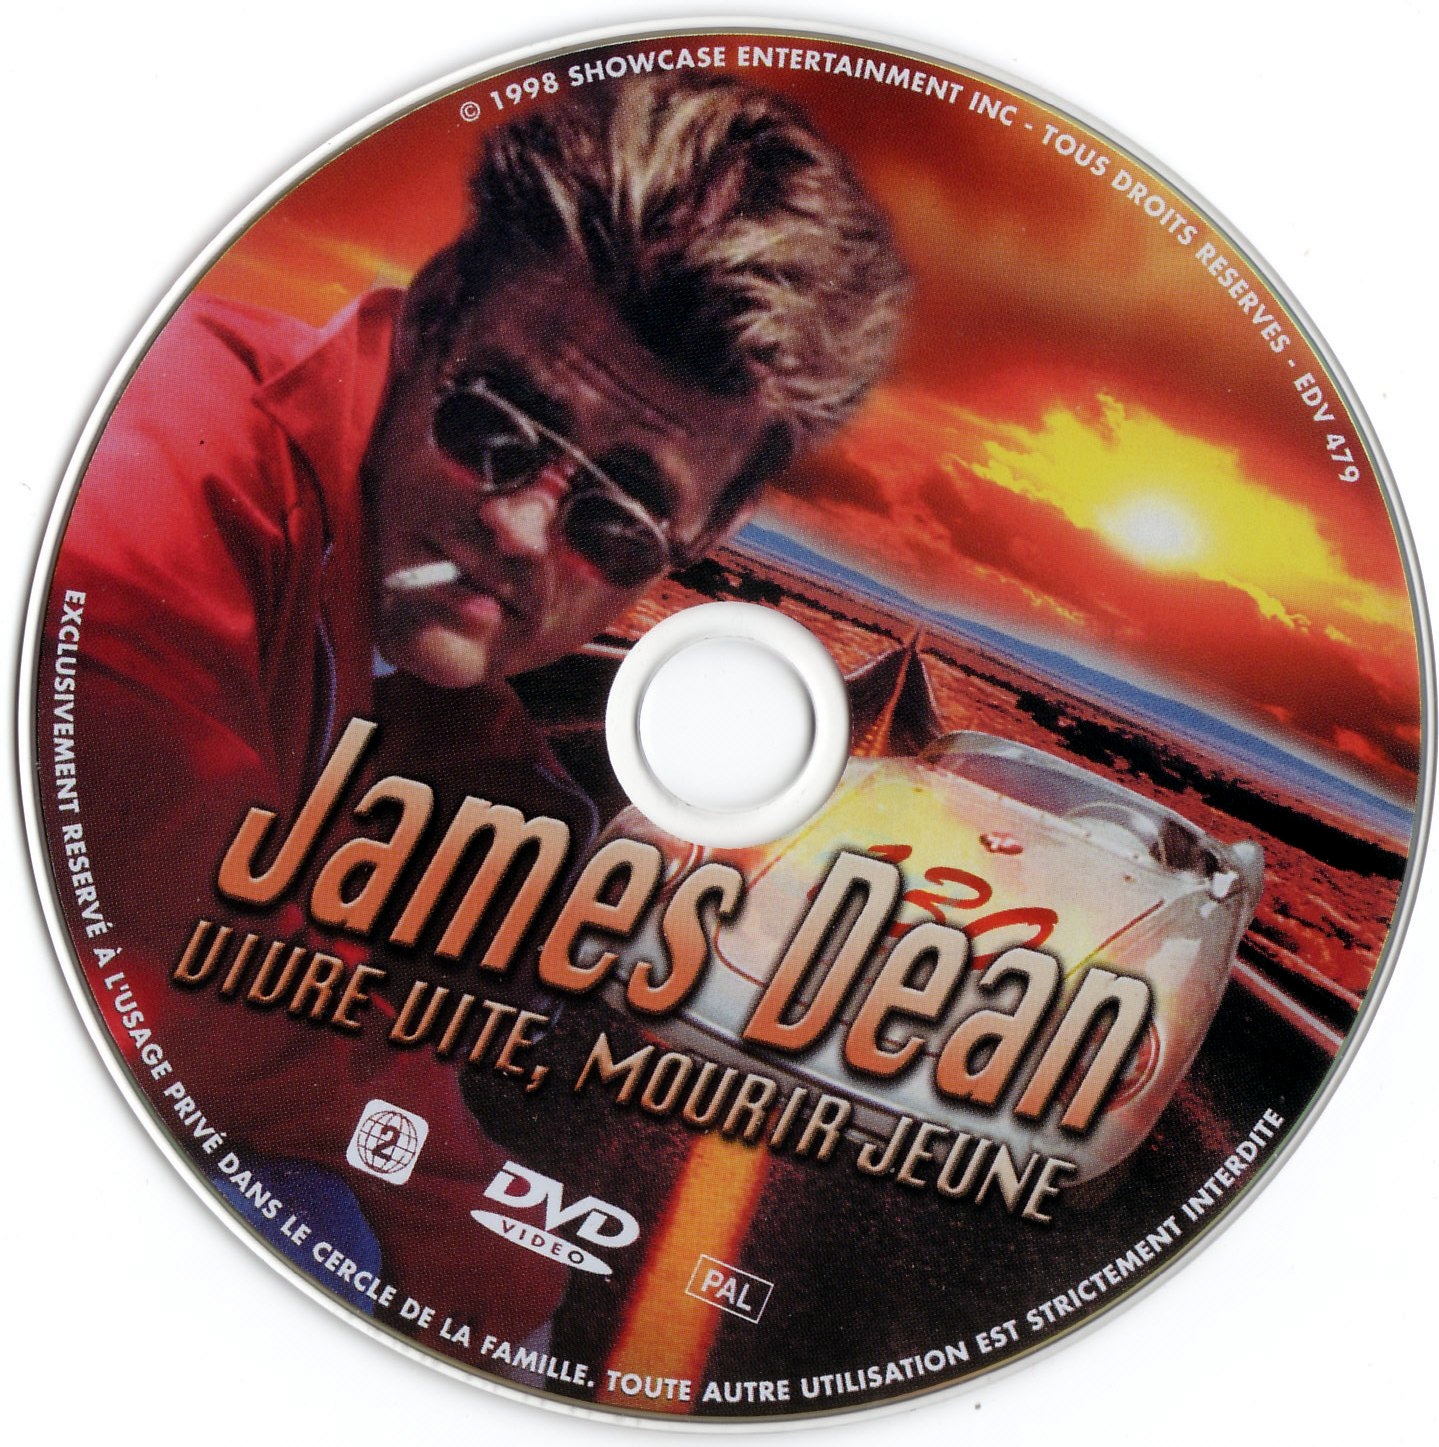 James Dean vivre vite mourir jeune